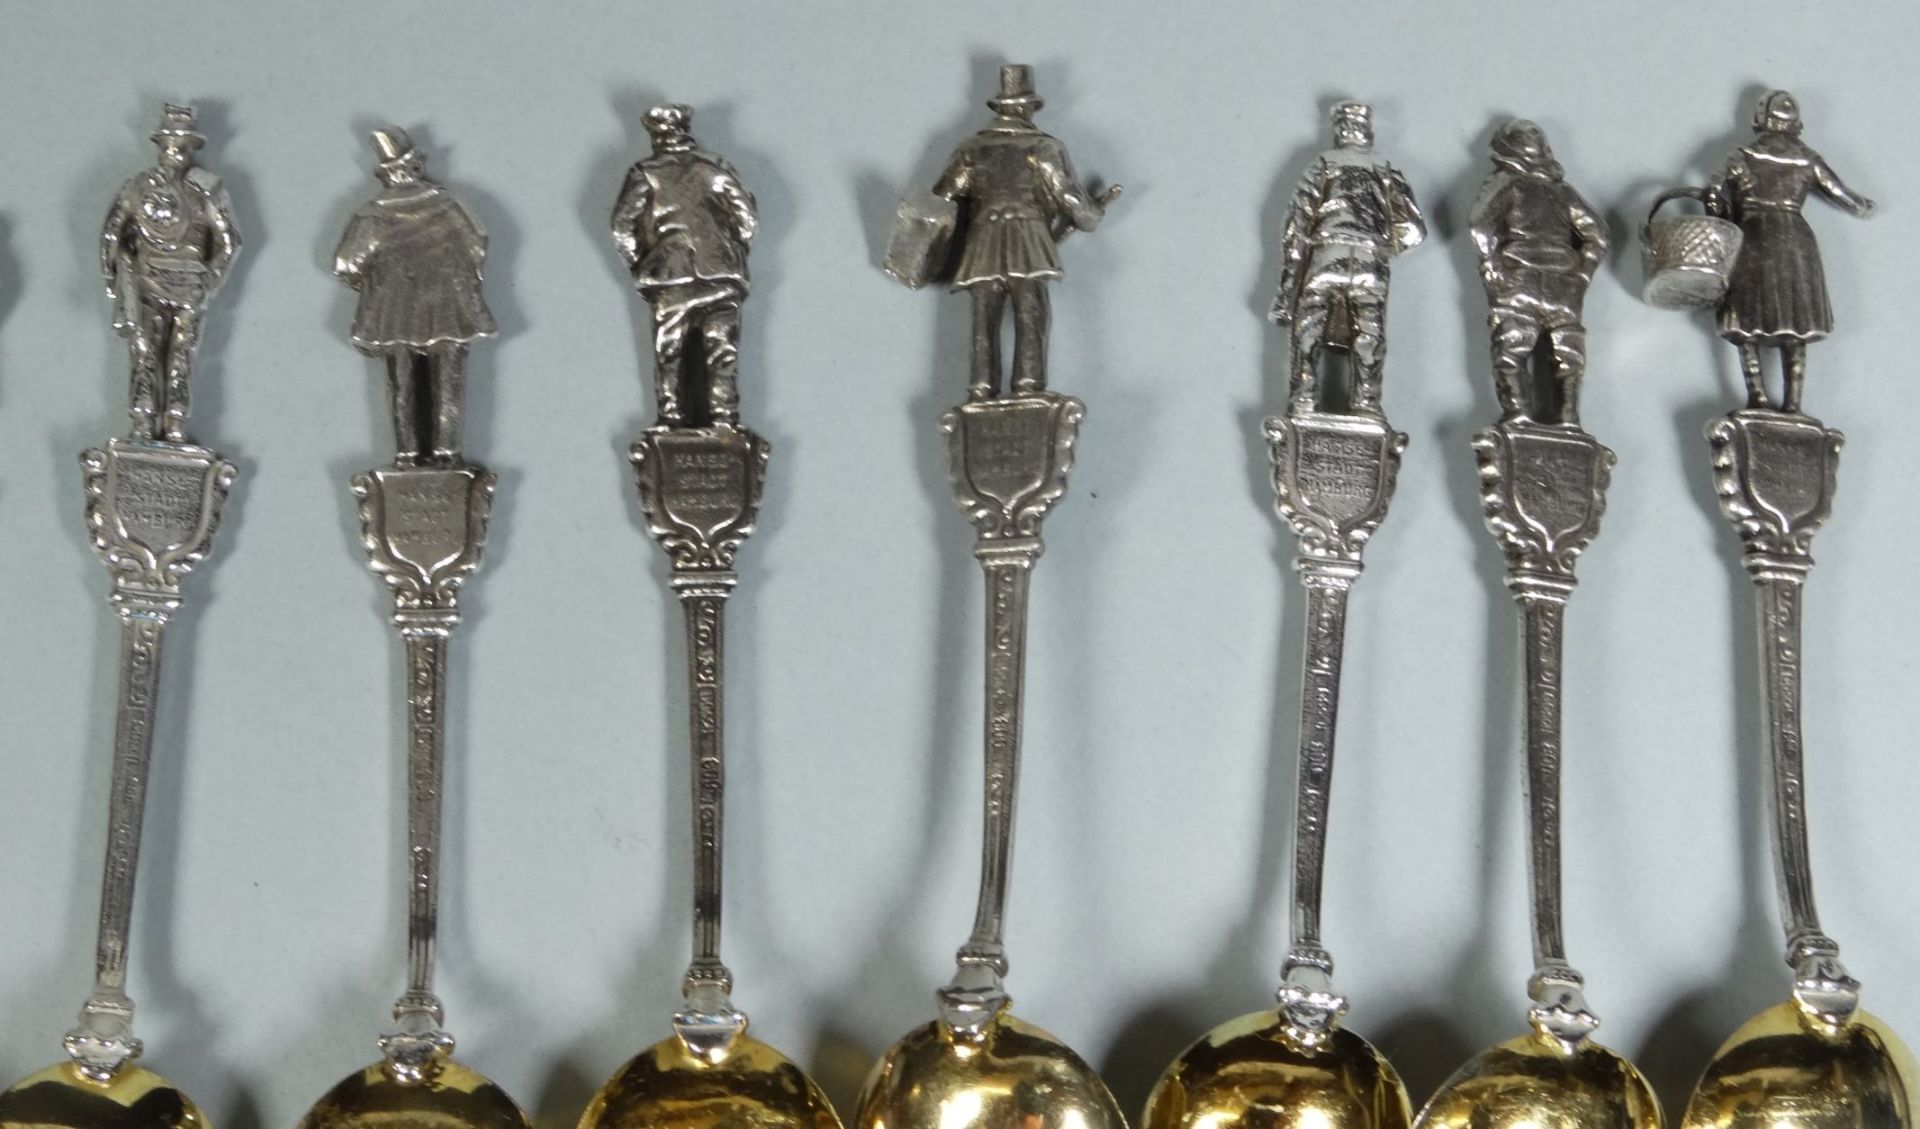 12 figürliche Moccalöffel, Silber-800-, Hamburg, Laffe vergoldet, L-10 cm, zus. 156 g - Bild 7 aus 9